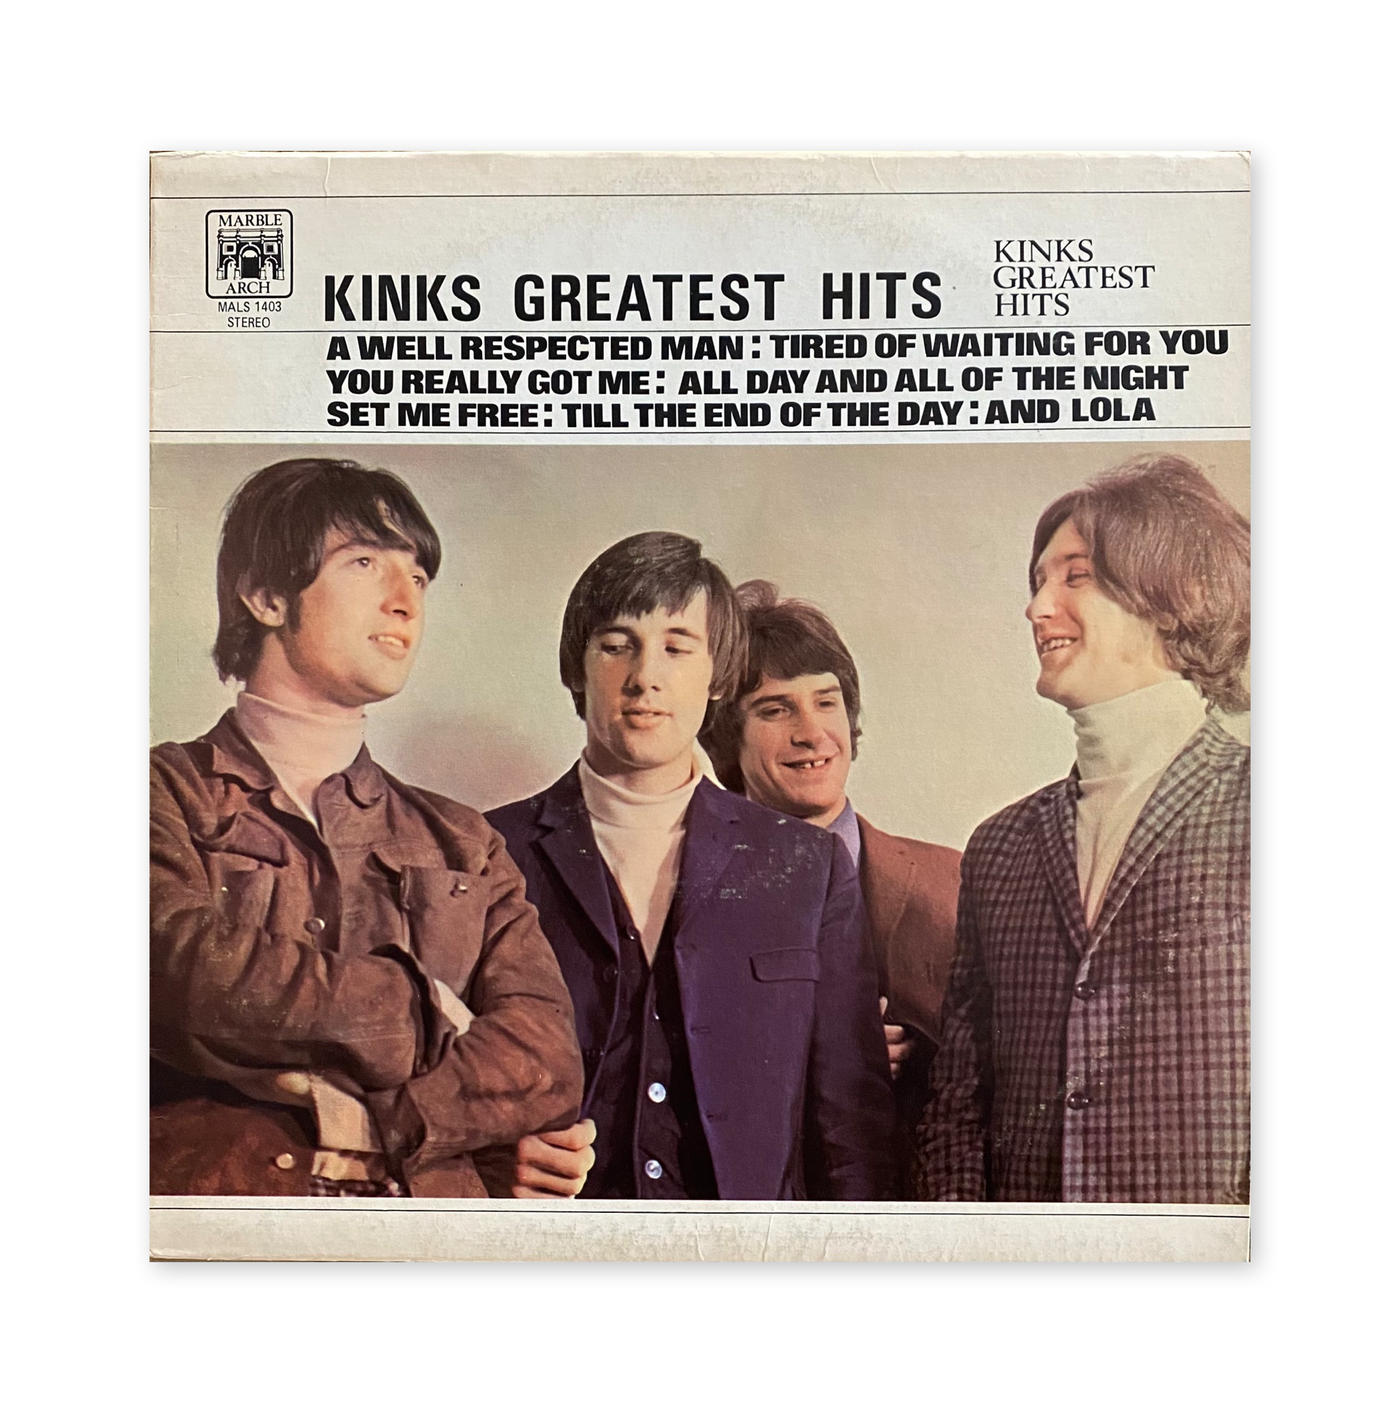 The Kinks - Kinks Greatest Hits